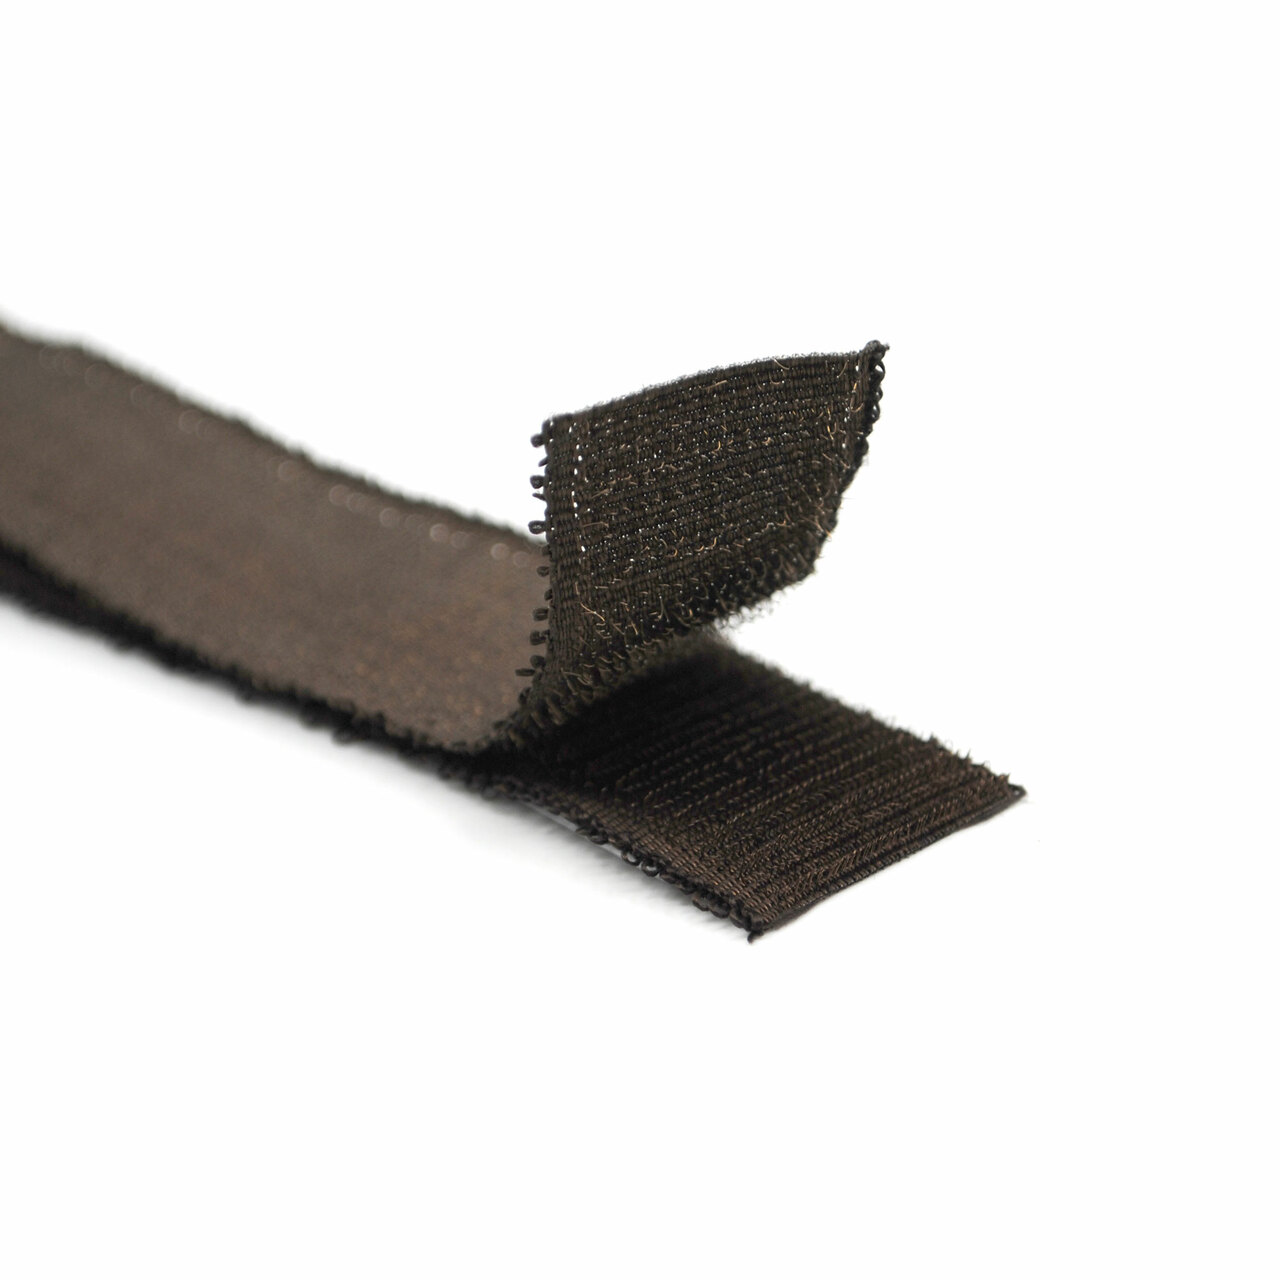 Velcro® Brand Sticky-Back Tape 3/4x15